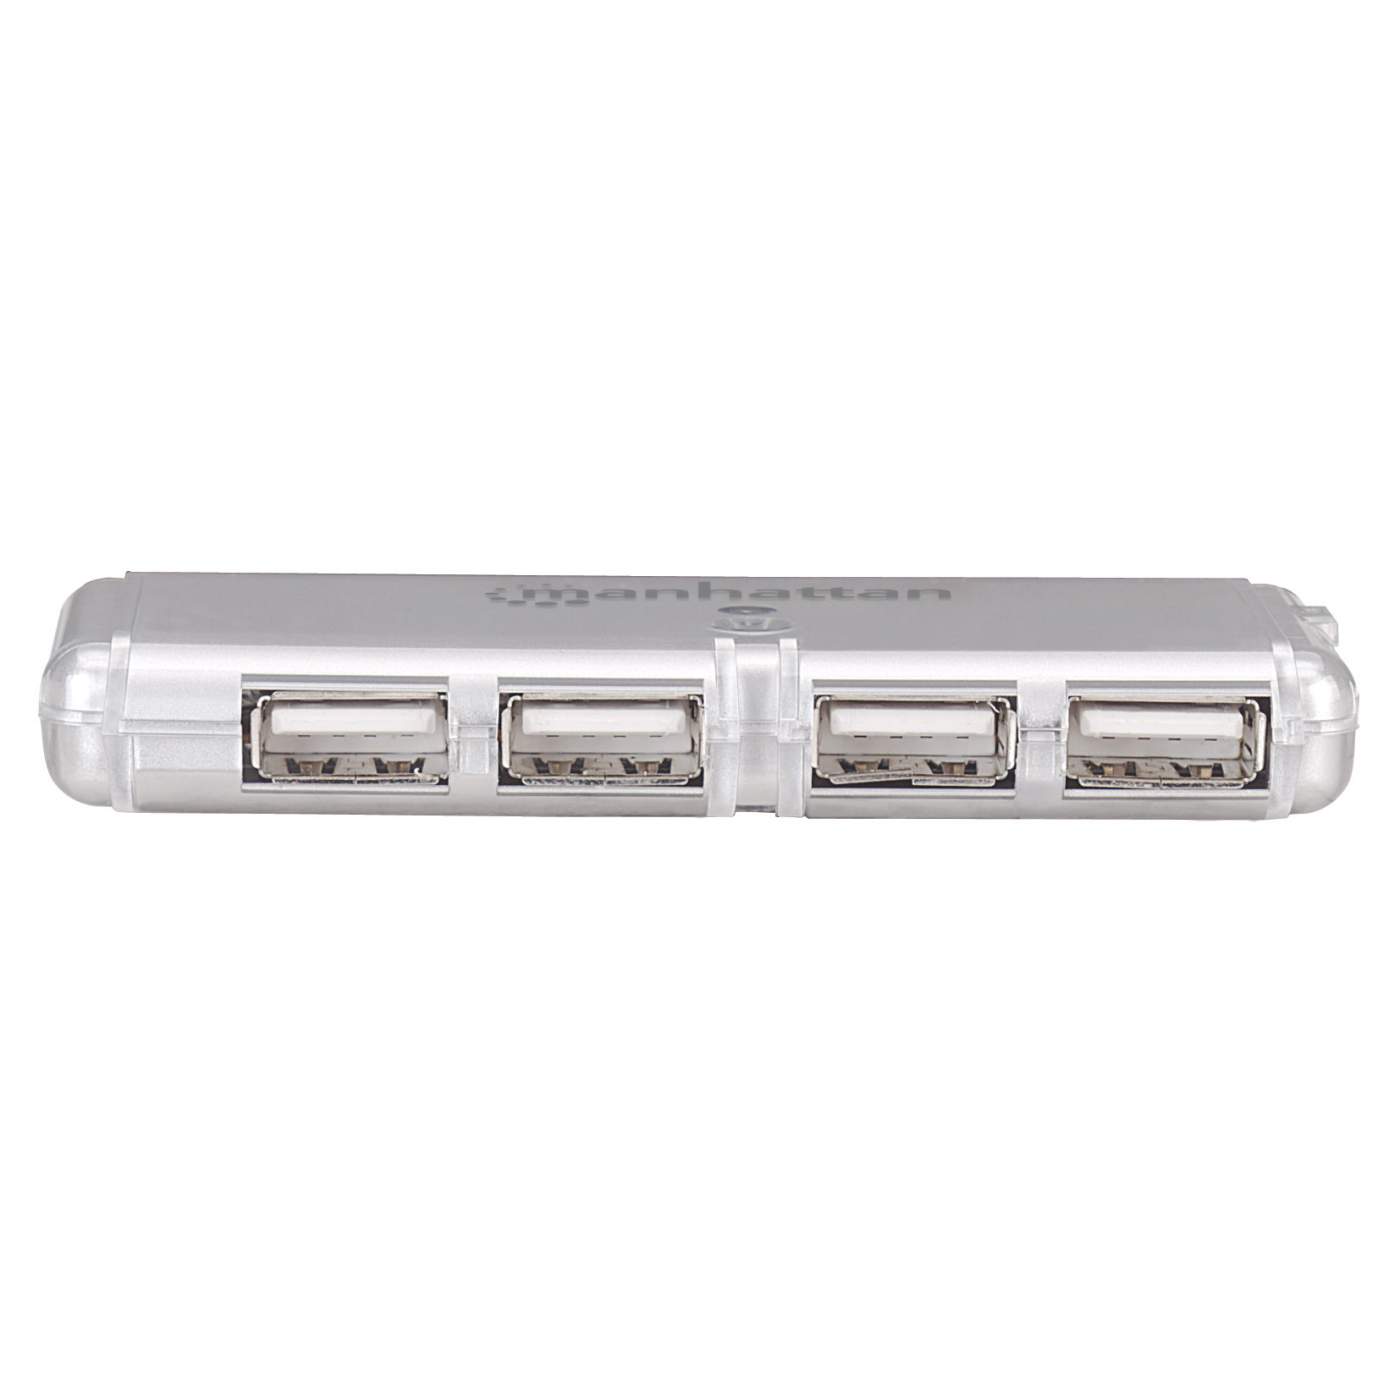 Hi-Speed USB Pocket Hub Image 7